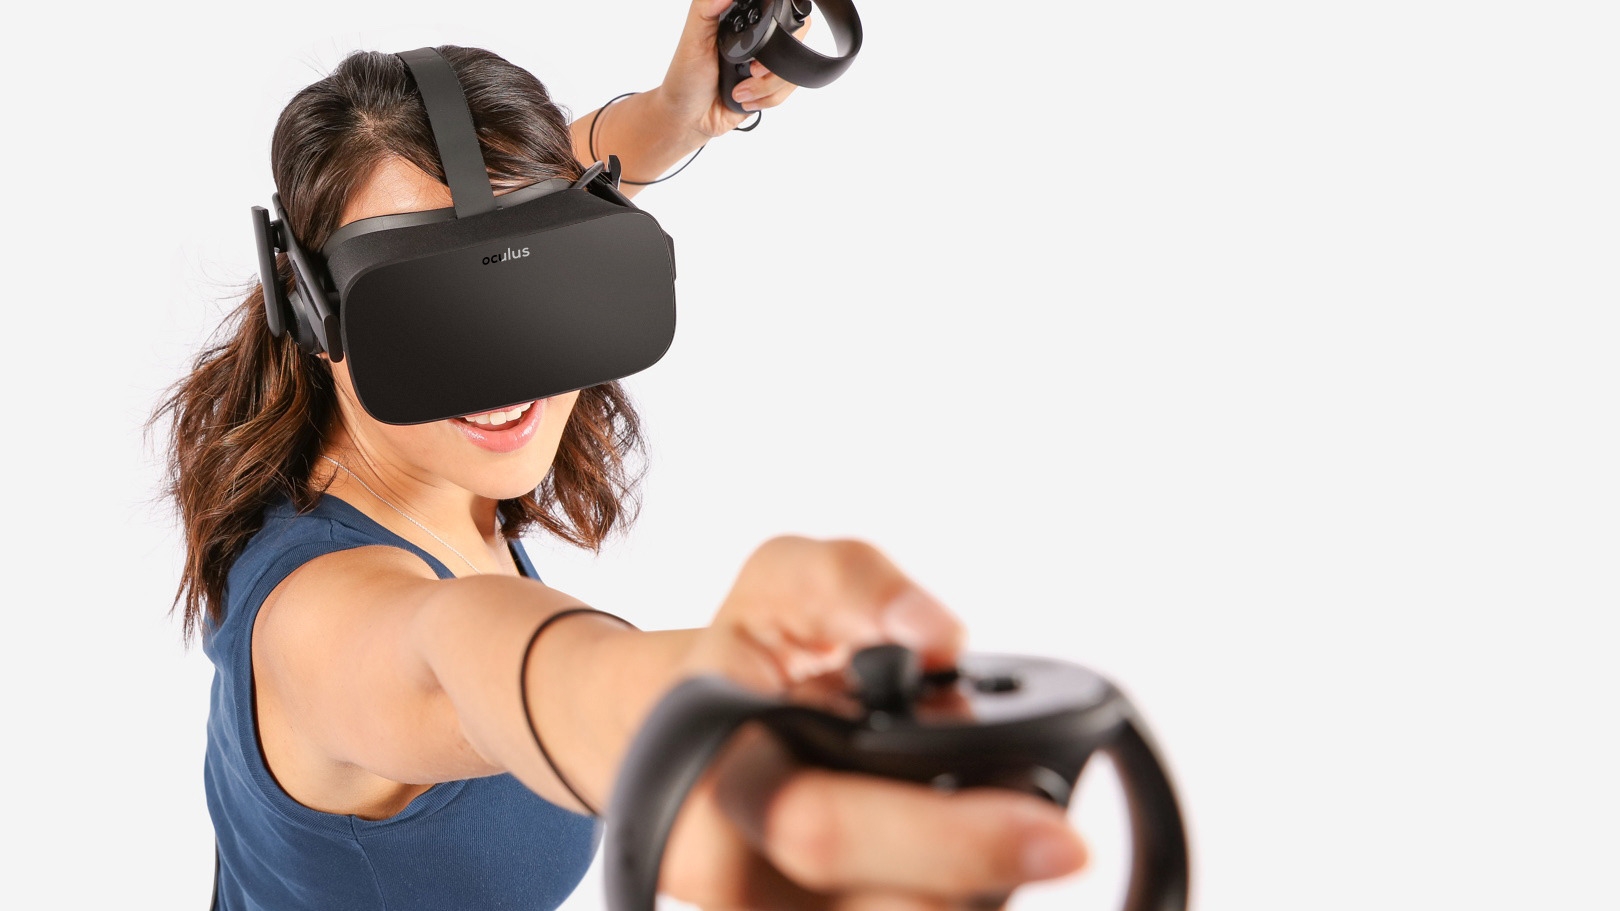 Samtlige Oculus Rift-briller har sluttet å virke - Gamer.no